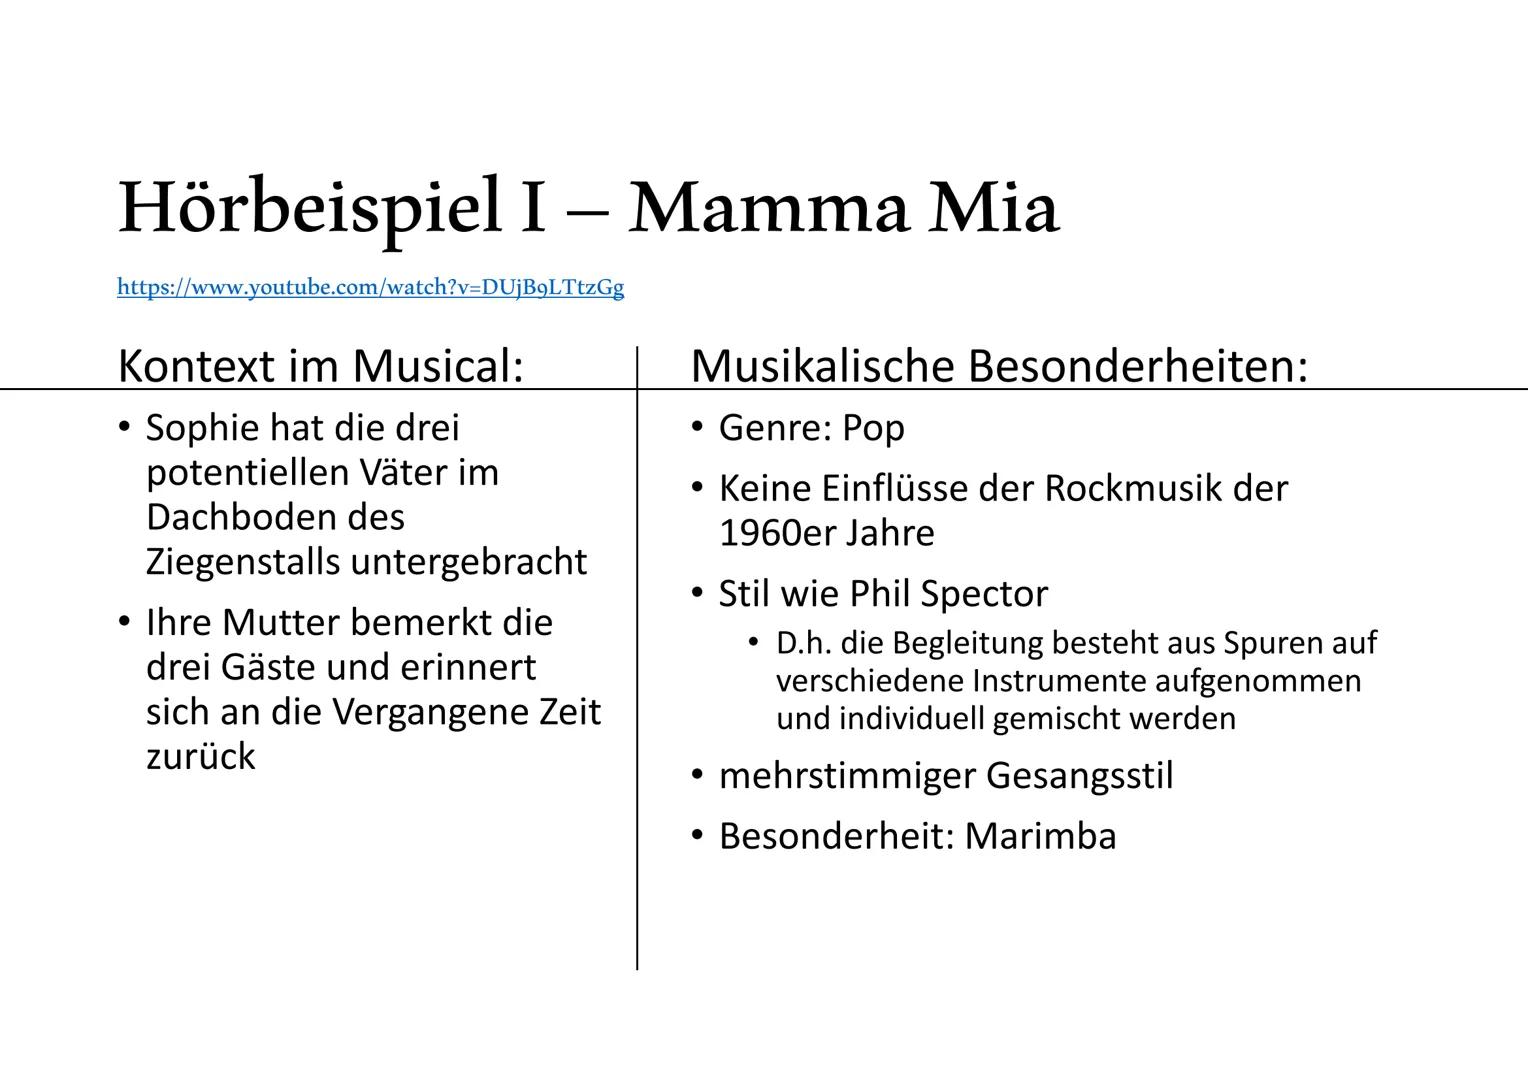 
<h2 id="allgemeines">Allgemeines</h2>
<p>Das Genre des Musicals "Mamma Mia!" ist eine Pop-Komödie. Nach dem großen Erfolg des Musicals "Che